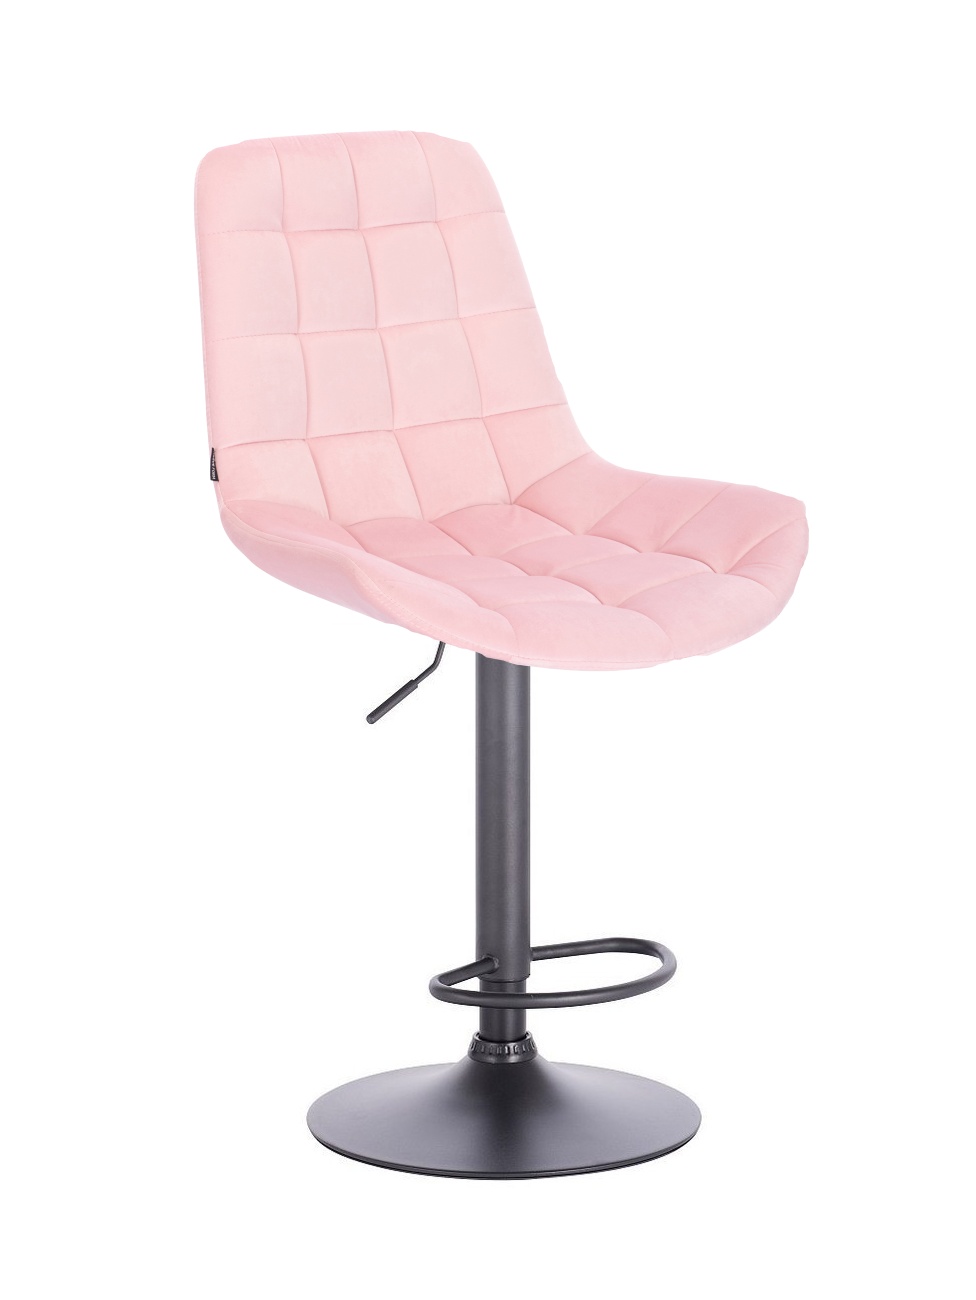 Velurová barová židle PARIS - světle růžová na černé podstavě